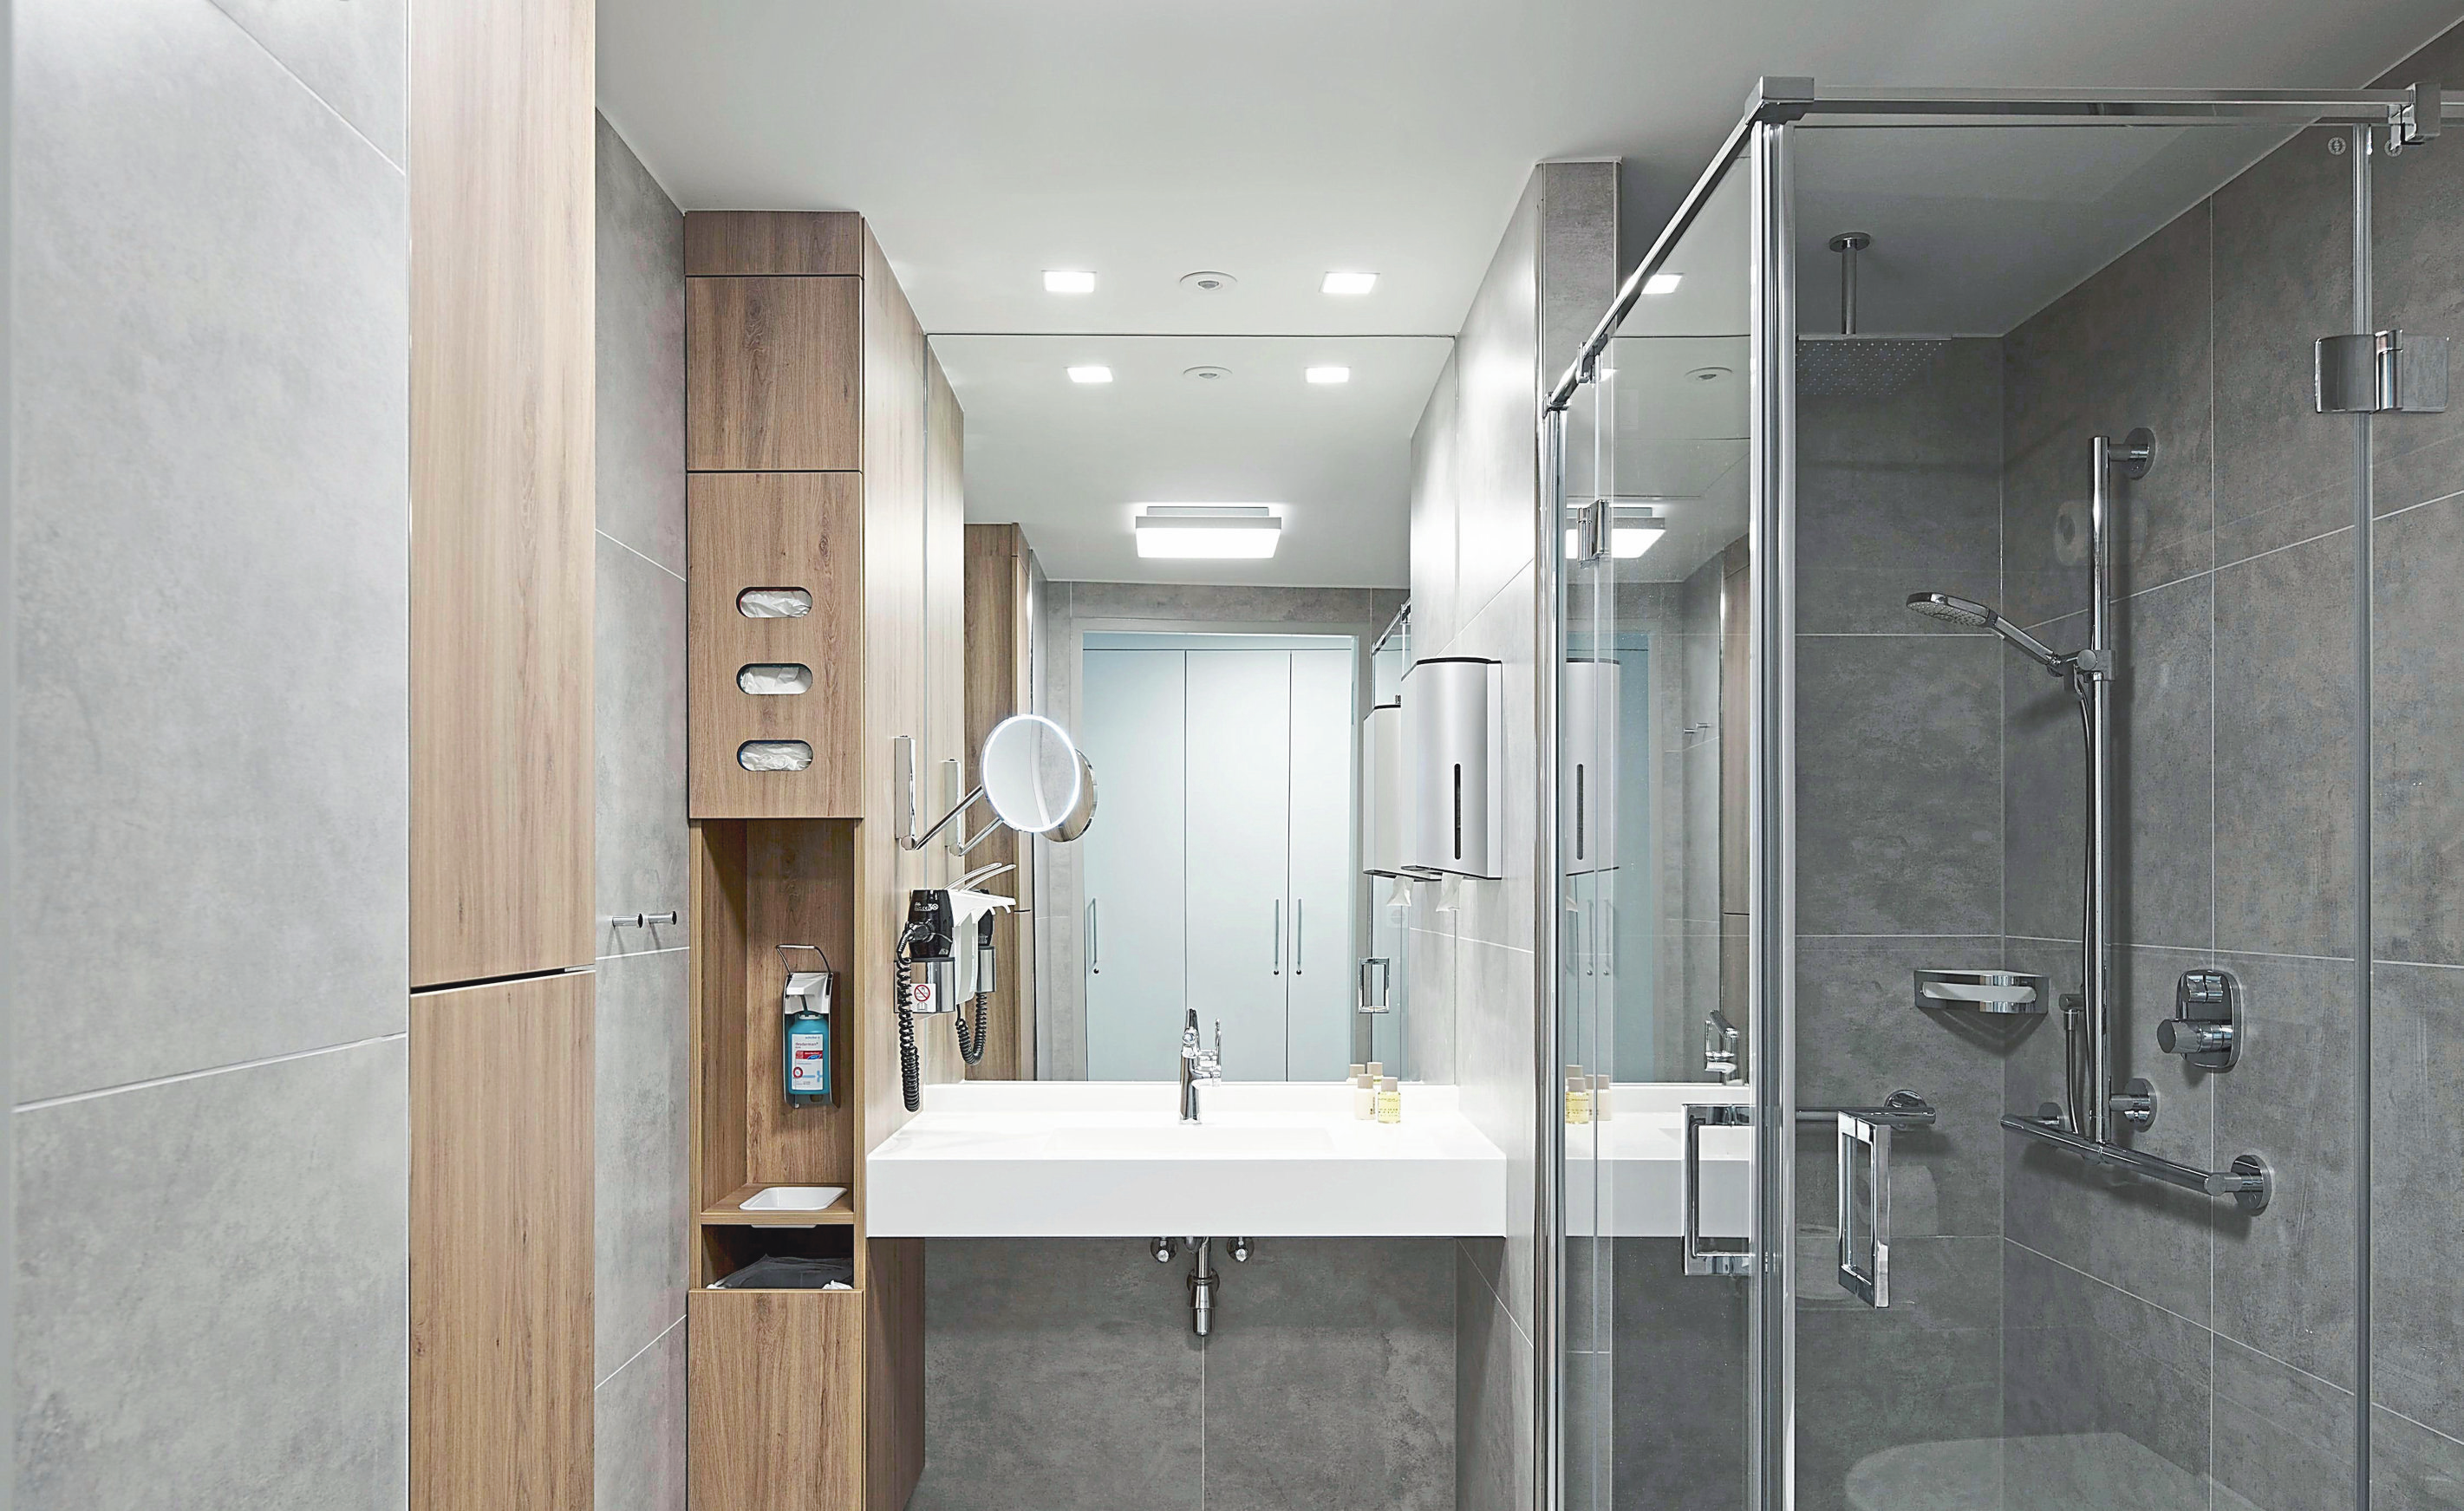 Die großzügigen Badezimmer bieten echten Wohlfühlkomfort: Die bodentiefen Duschen sind mit Rainshower-Element ausgestattet. Neben Dusch- und Waschsets und dem kuscheligen Bademantel liegen hochwertige Frottier-Hand und -Badetücher bereit.